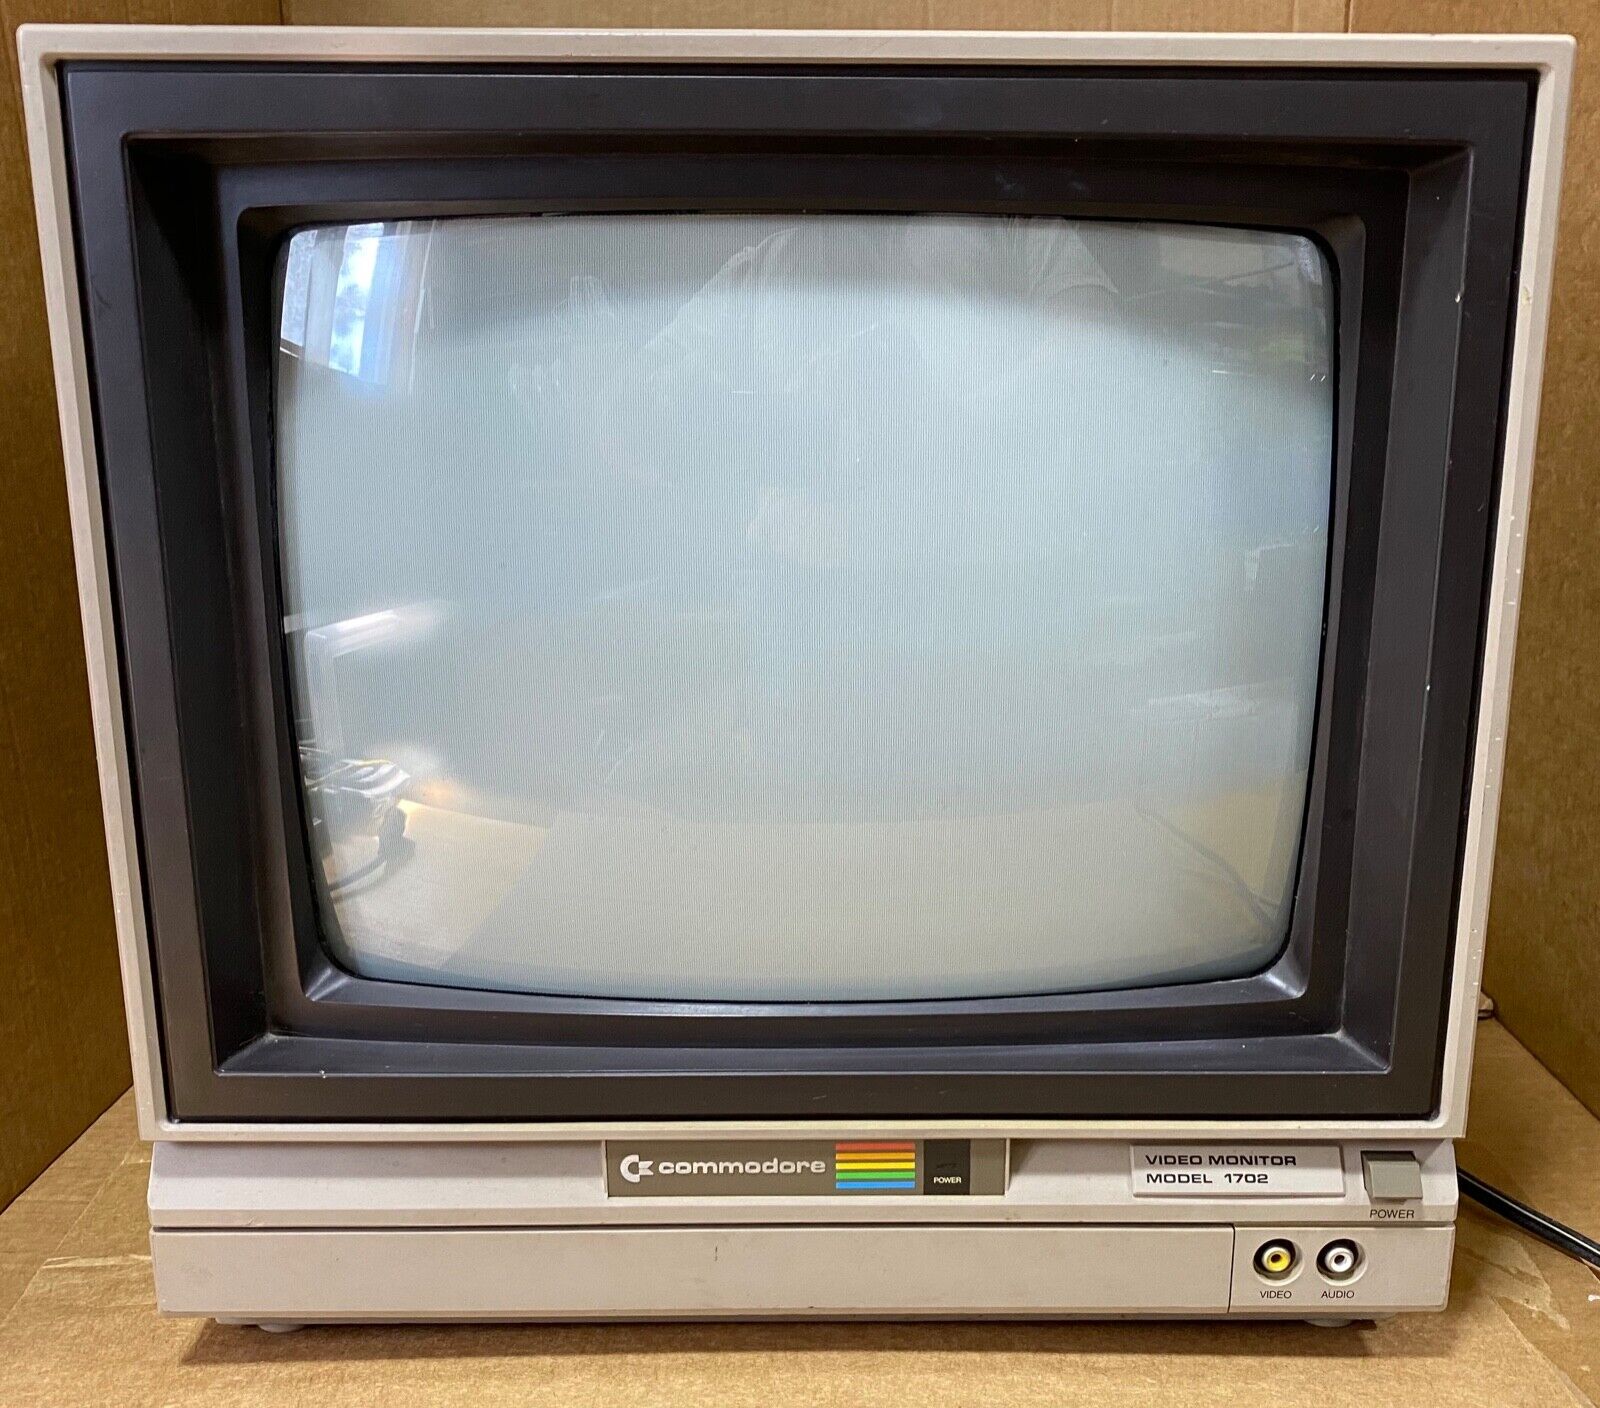 Commodore 1702 Video Computer Monitor - Good Condition - Very Rare